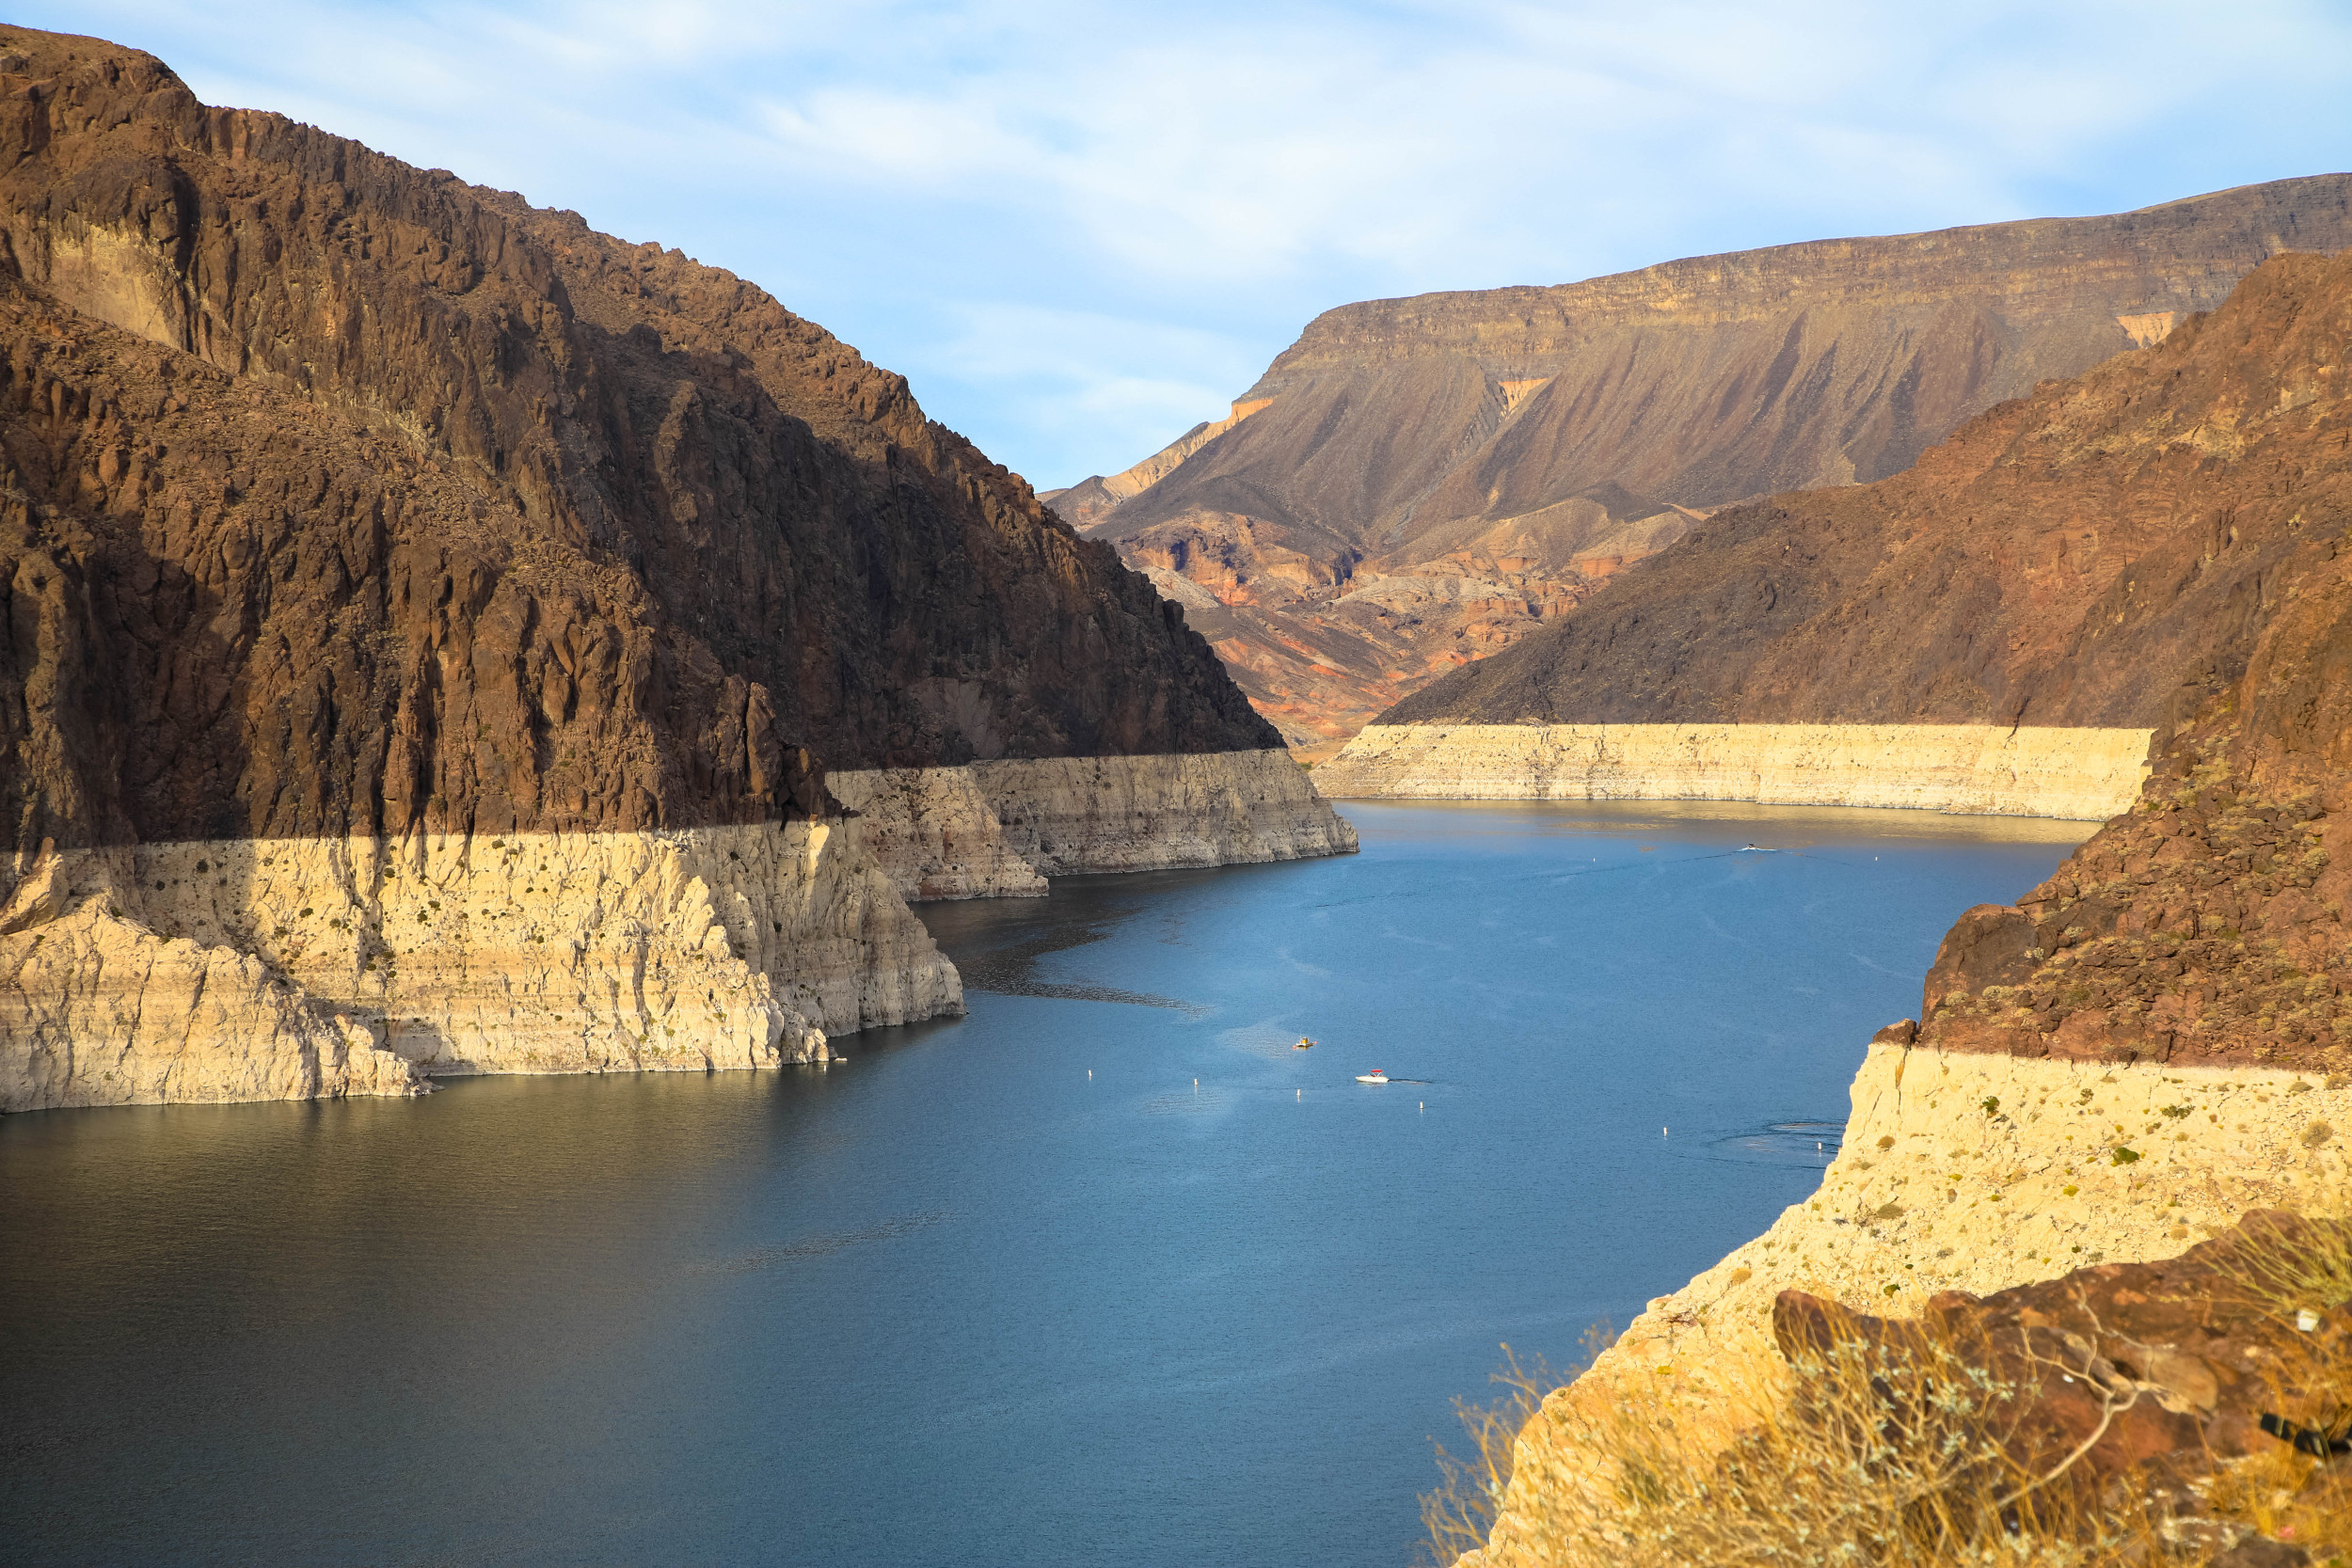 Le niveau d’eau du lac Mead n’a aucun risque de tomber en dessous de 1 000 pieds avant 2028